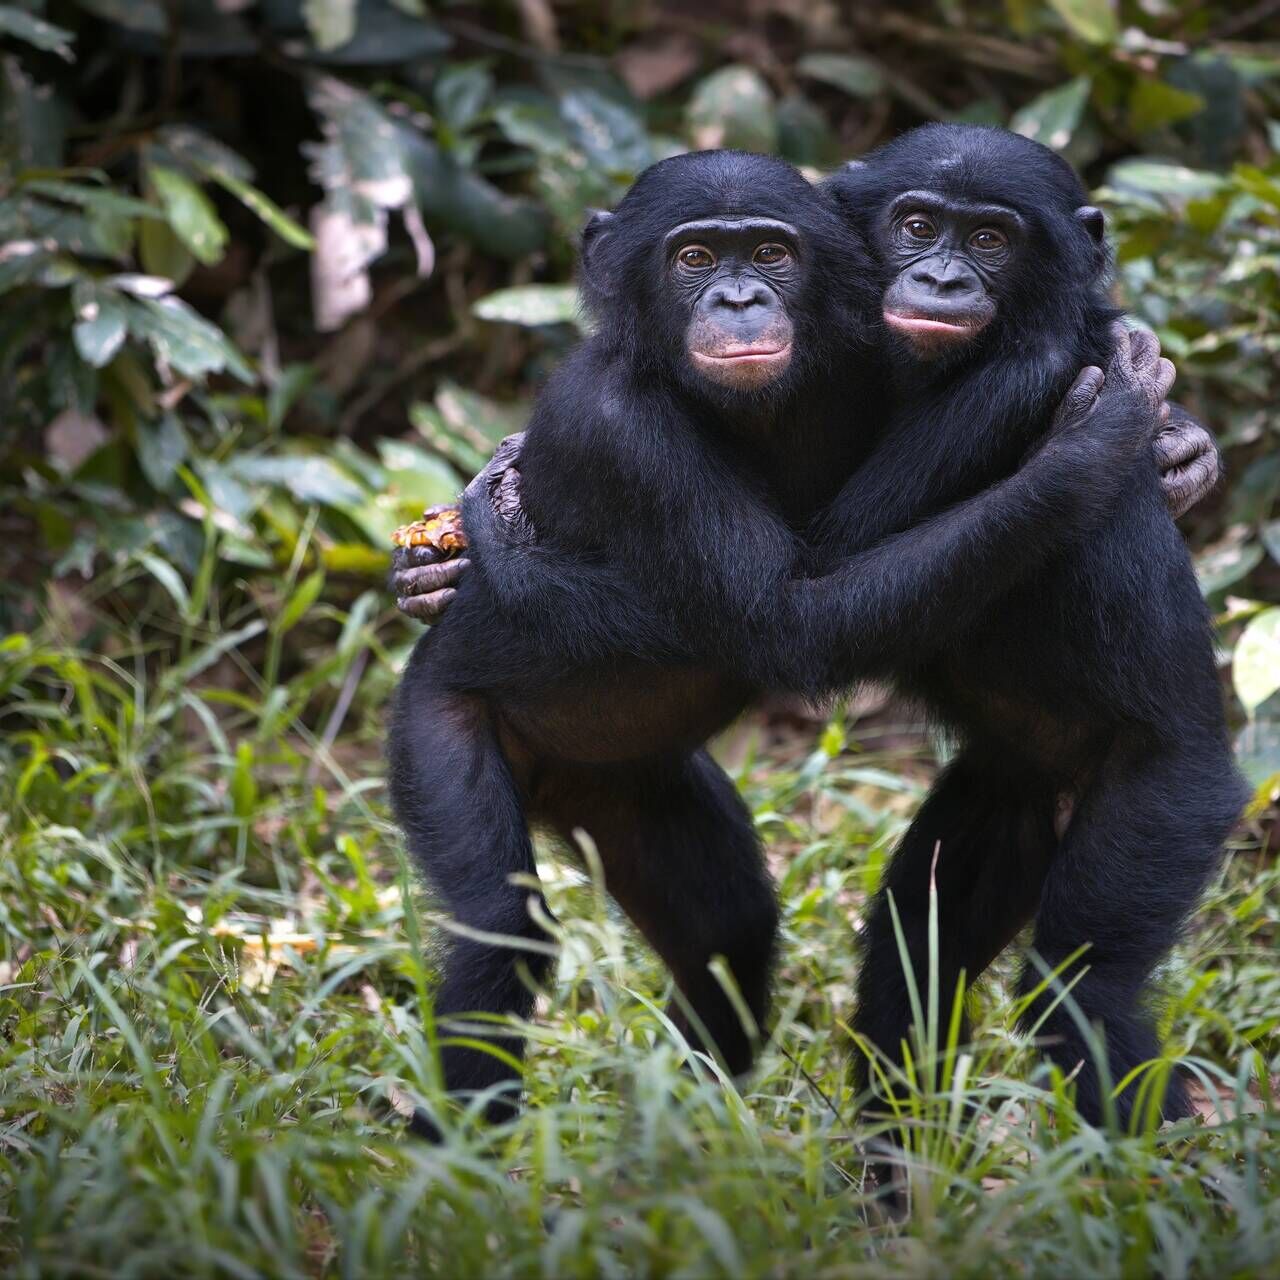 القرود: وفقا لبعض العلماء، فإن مصطلح الإنسان العاقل غير كاف ويجب إعادة تصنيف البشر تحت جنس بان، مثل الشمبانزي العادي والبونوبو.